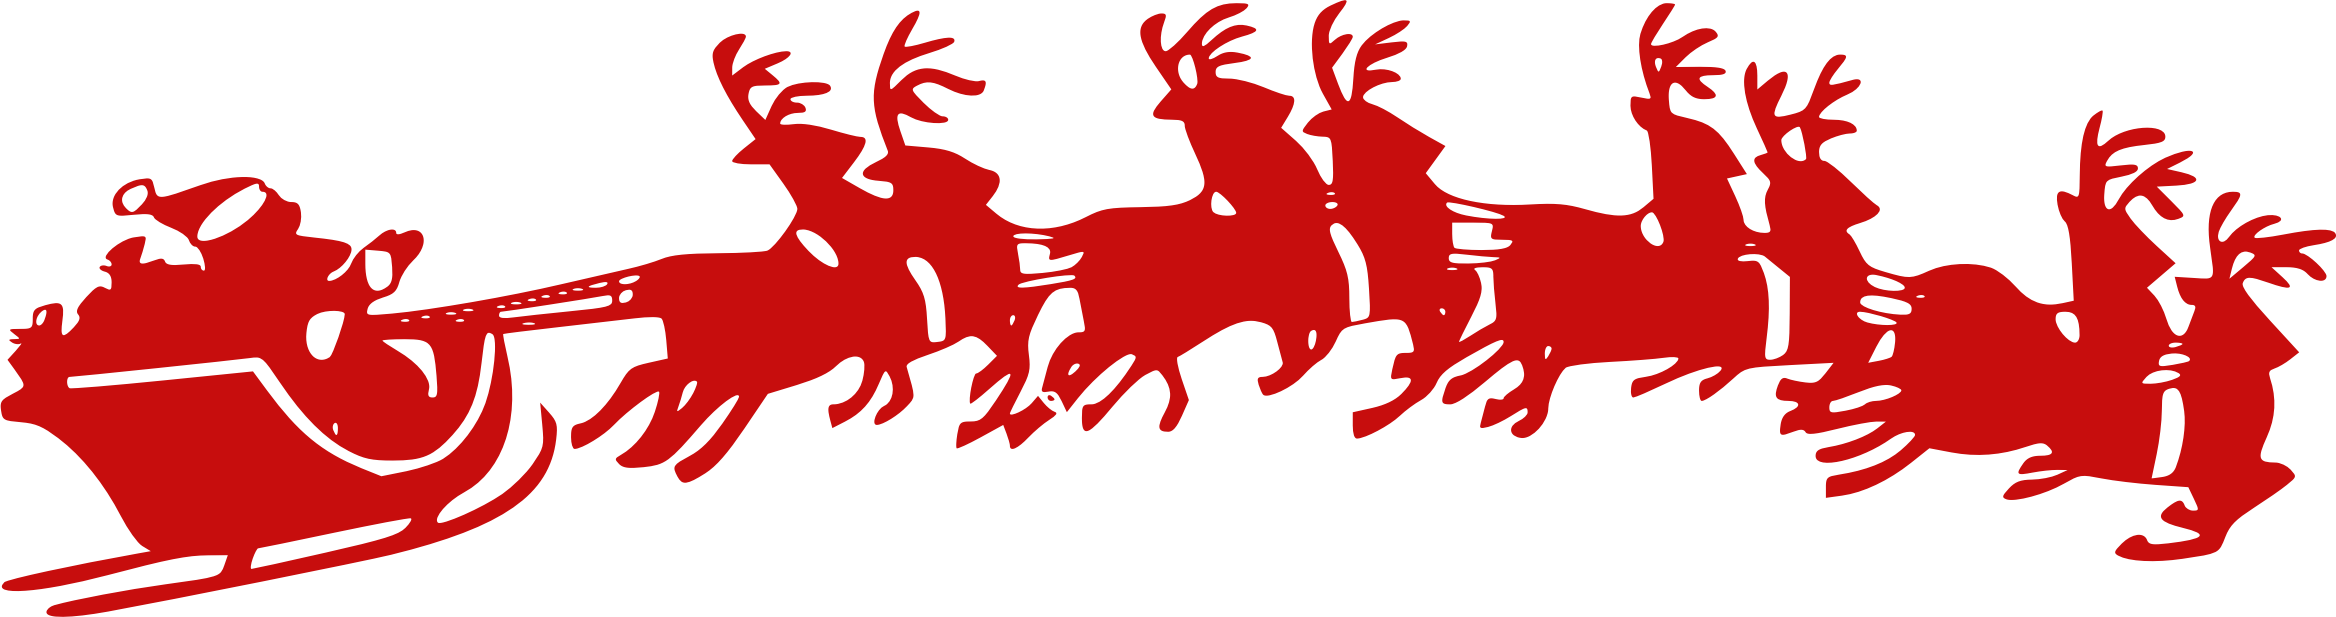 Santa Sleigh Clipart god jul alle sammen norwegian christmas vocabulary 32812